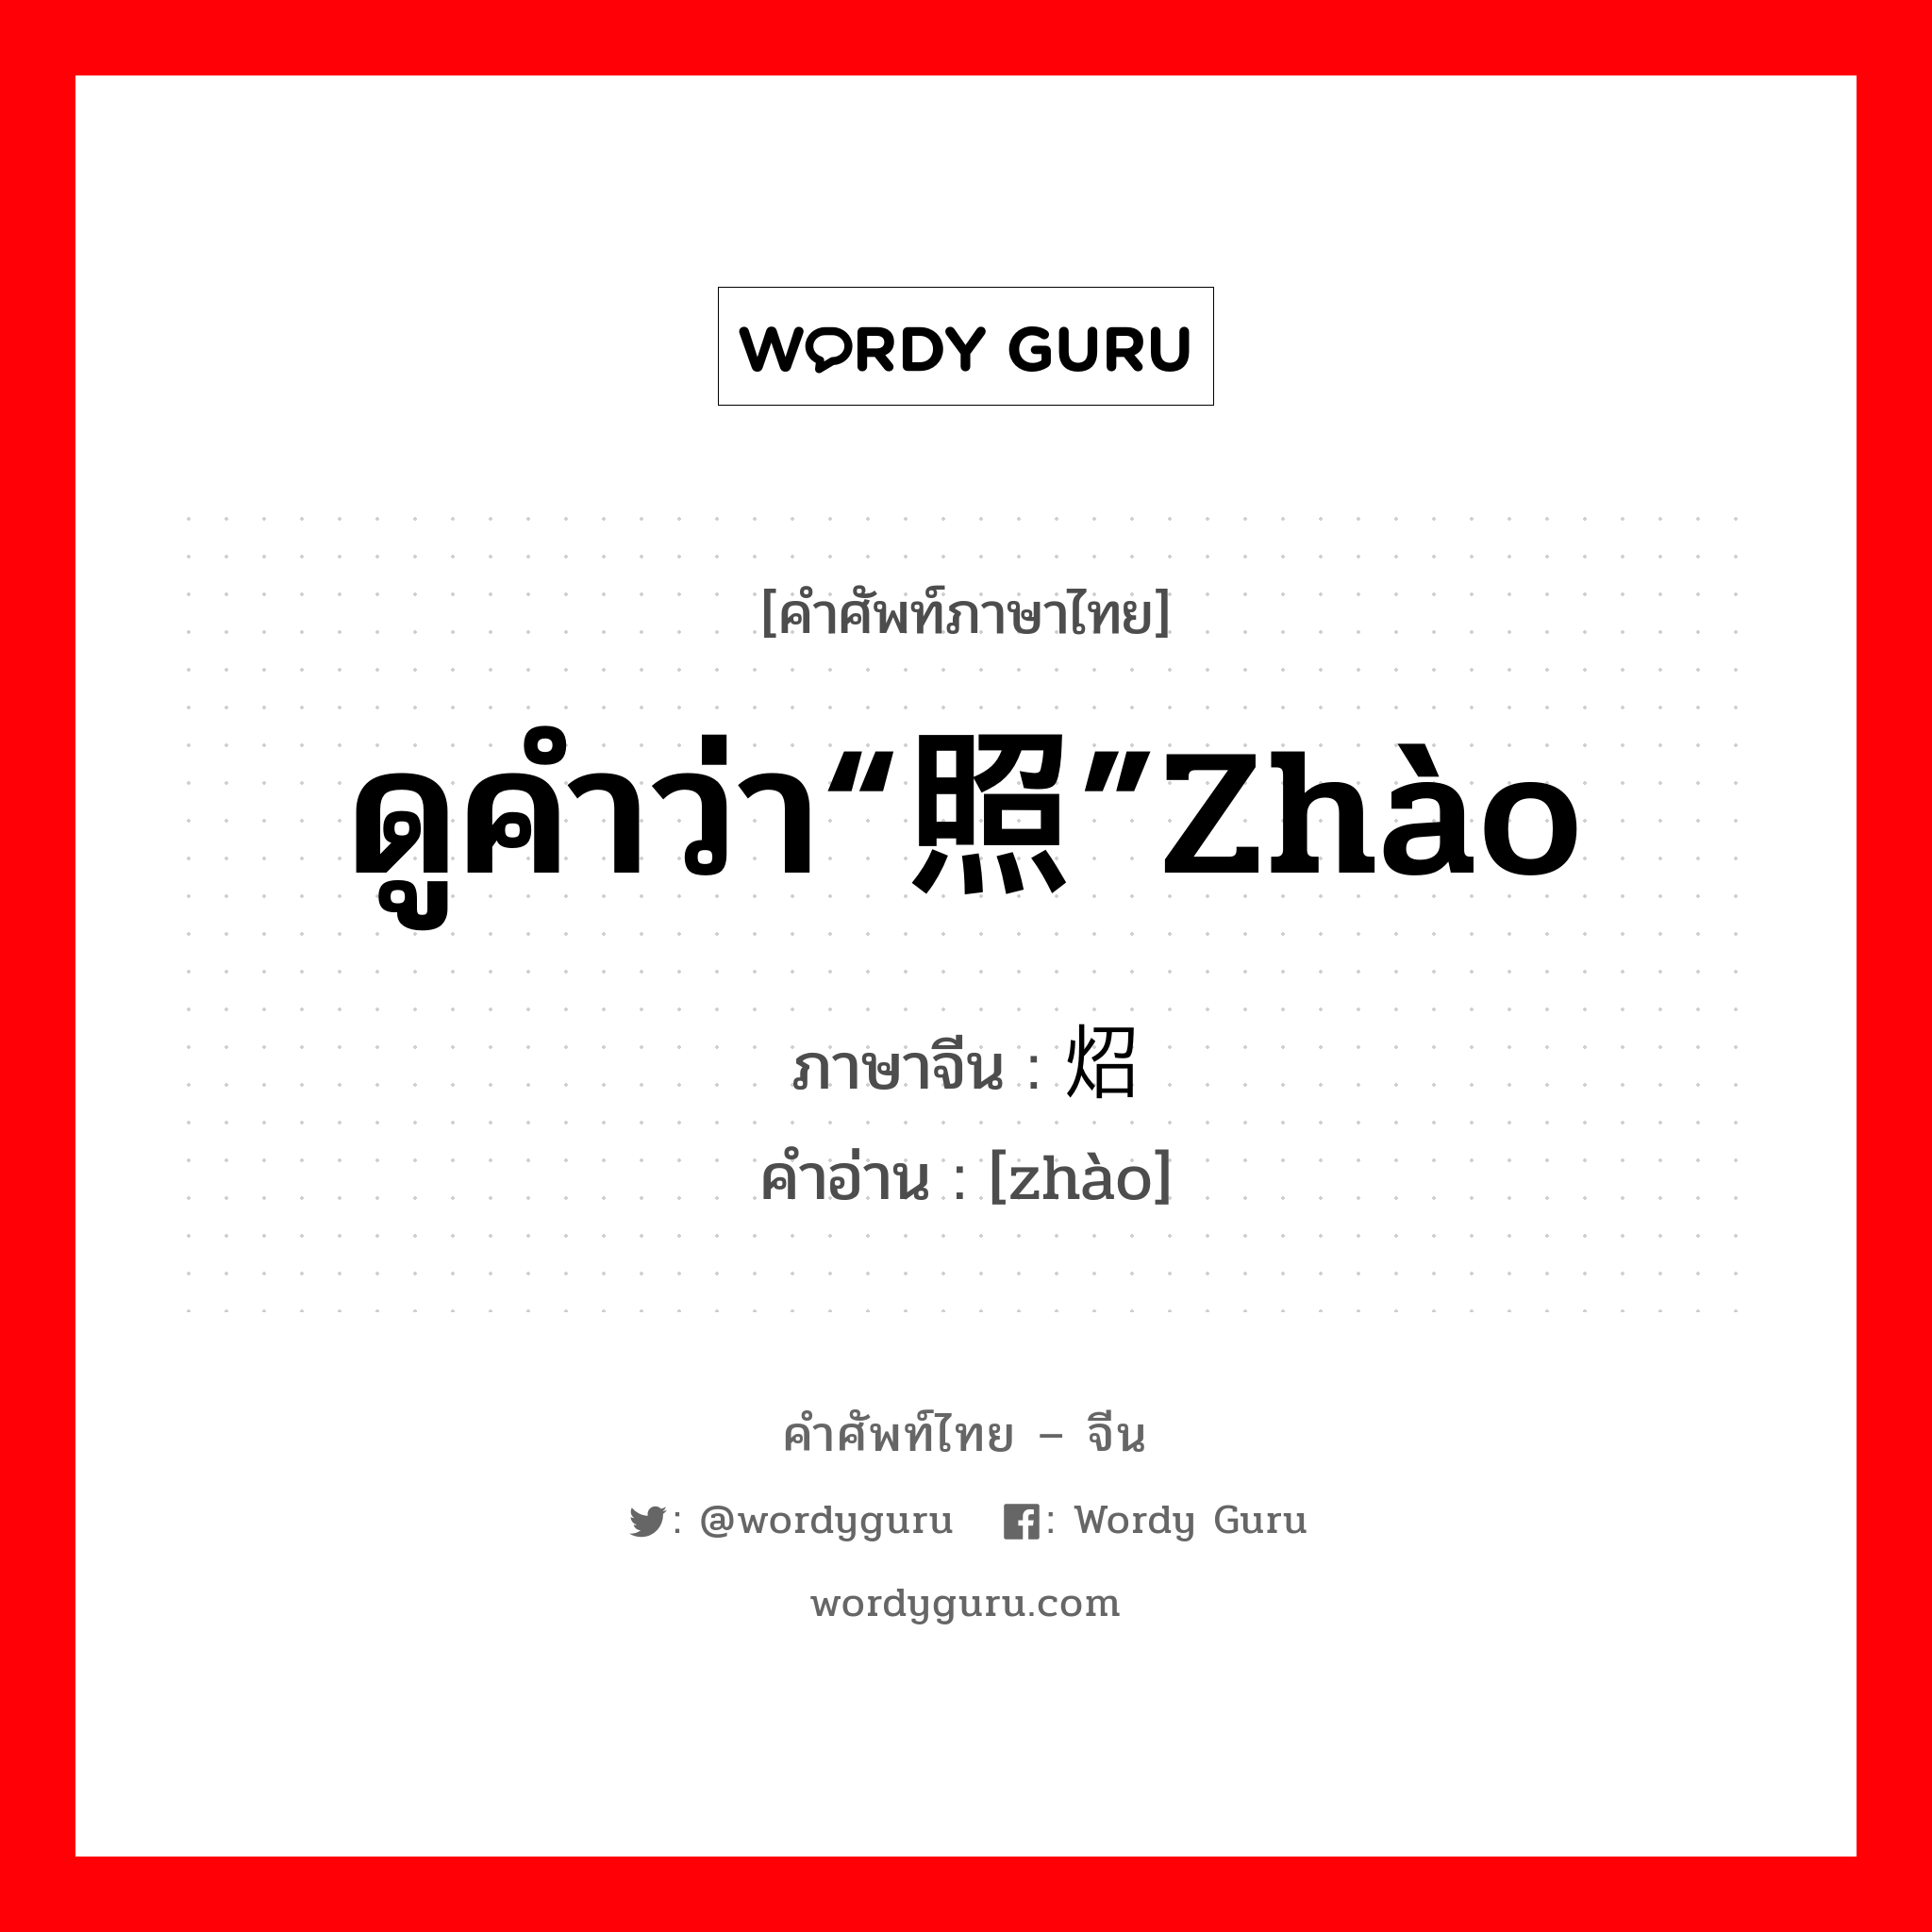 ดูคำว่า“照”zhào ภาษาจีนคืออะไร, คำศัพท์ภาษาไทย - จีน ดูคำว่า“照”zhào ภาษาจีน 炤 คำอ่าน [zhào]